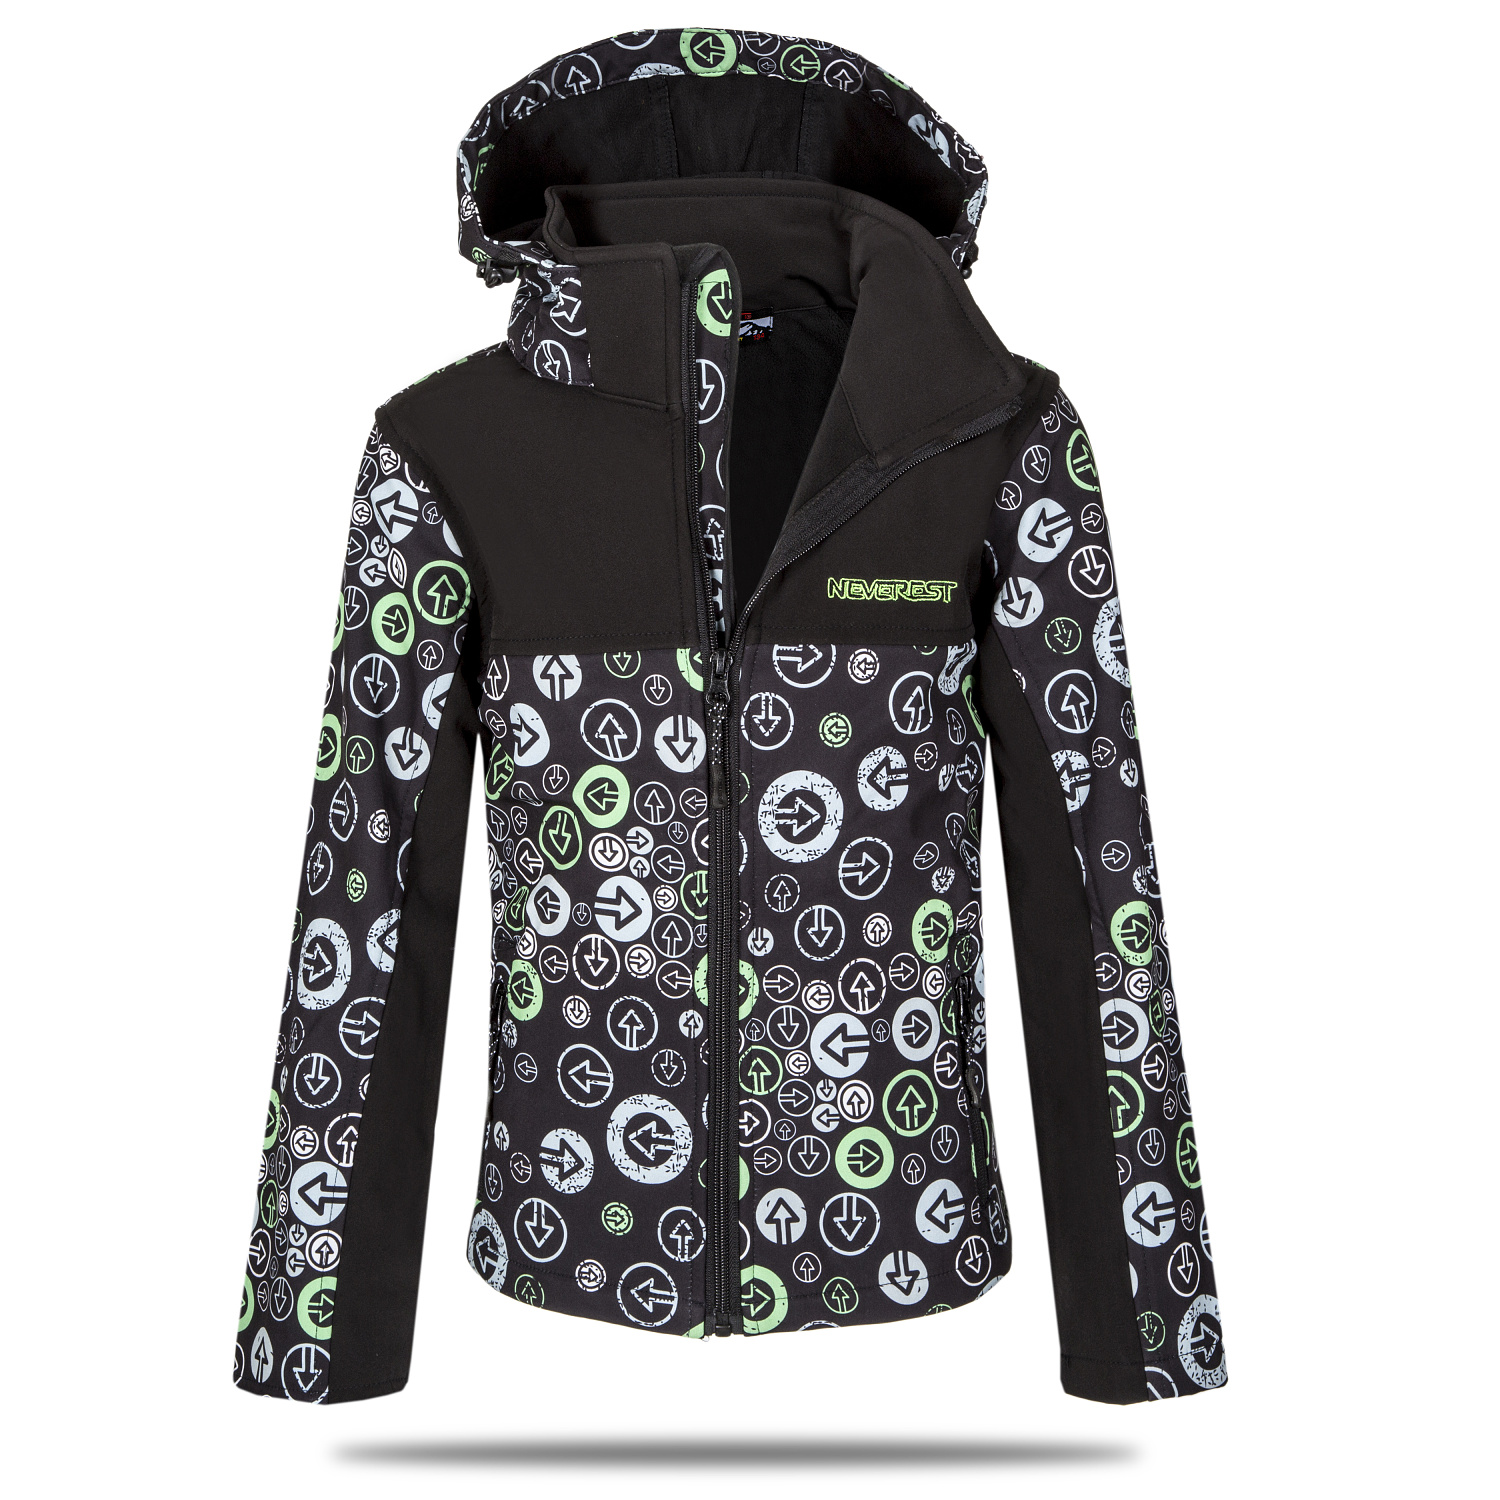 Chlapecká softshellová bunda - NEVEREST I-6296cc, černo-zelená Barva: Černo-zelená, Velikost: 116